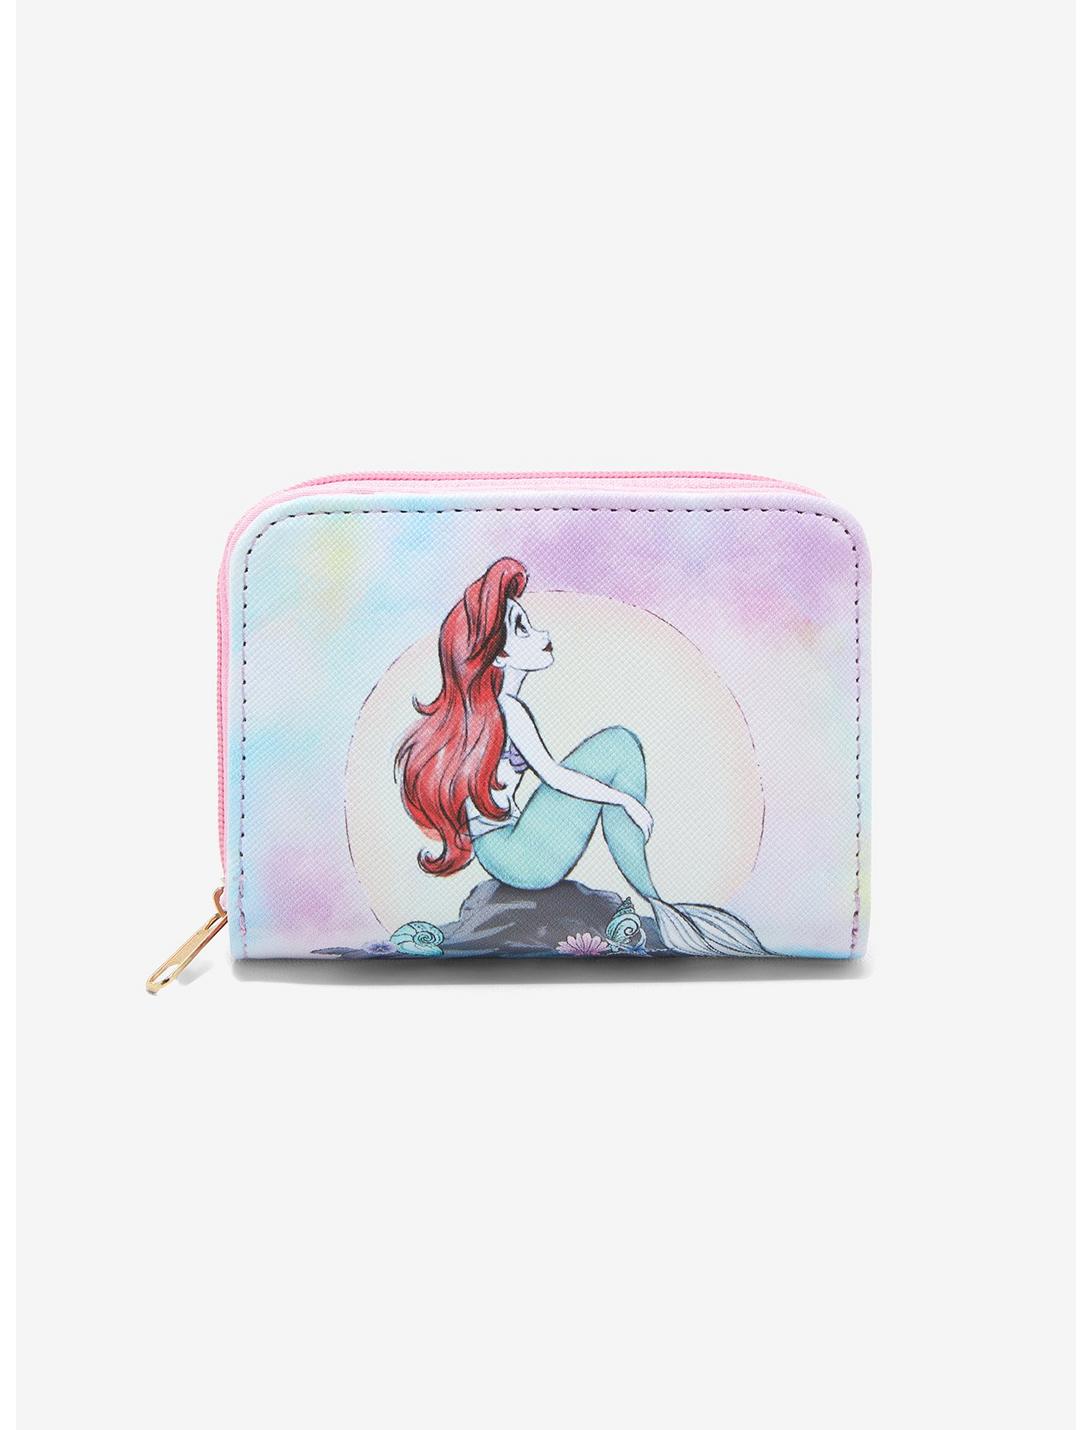 Disney Princess The Little Mermaid Ariel Mini Zipper Wallet, , hi-res